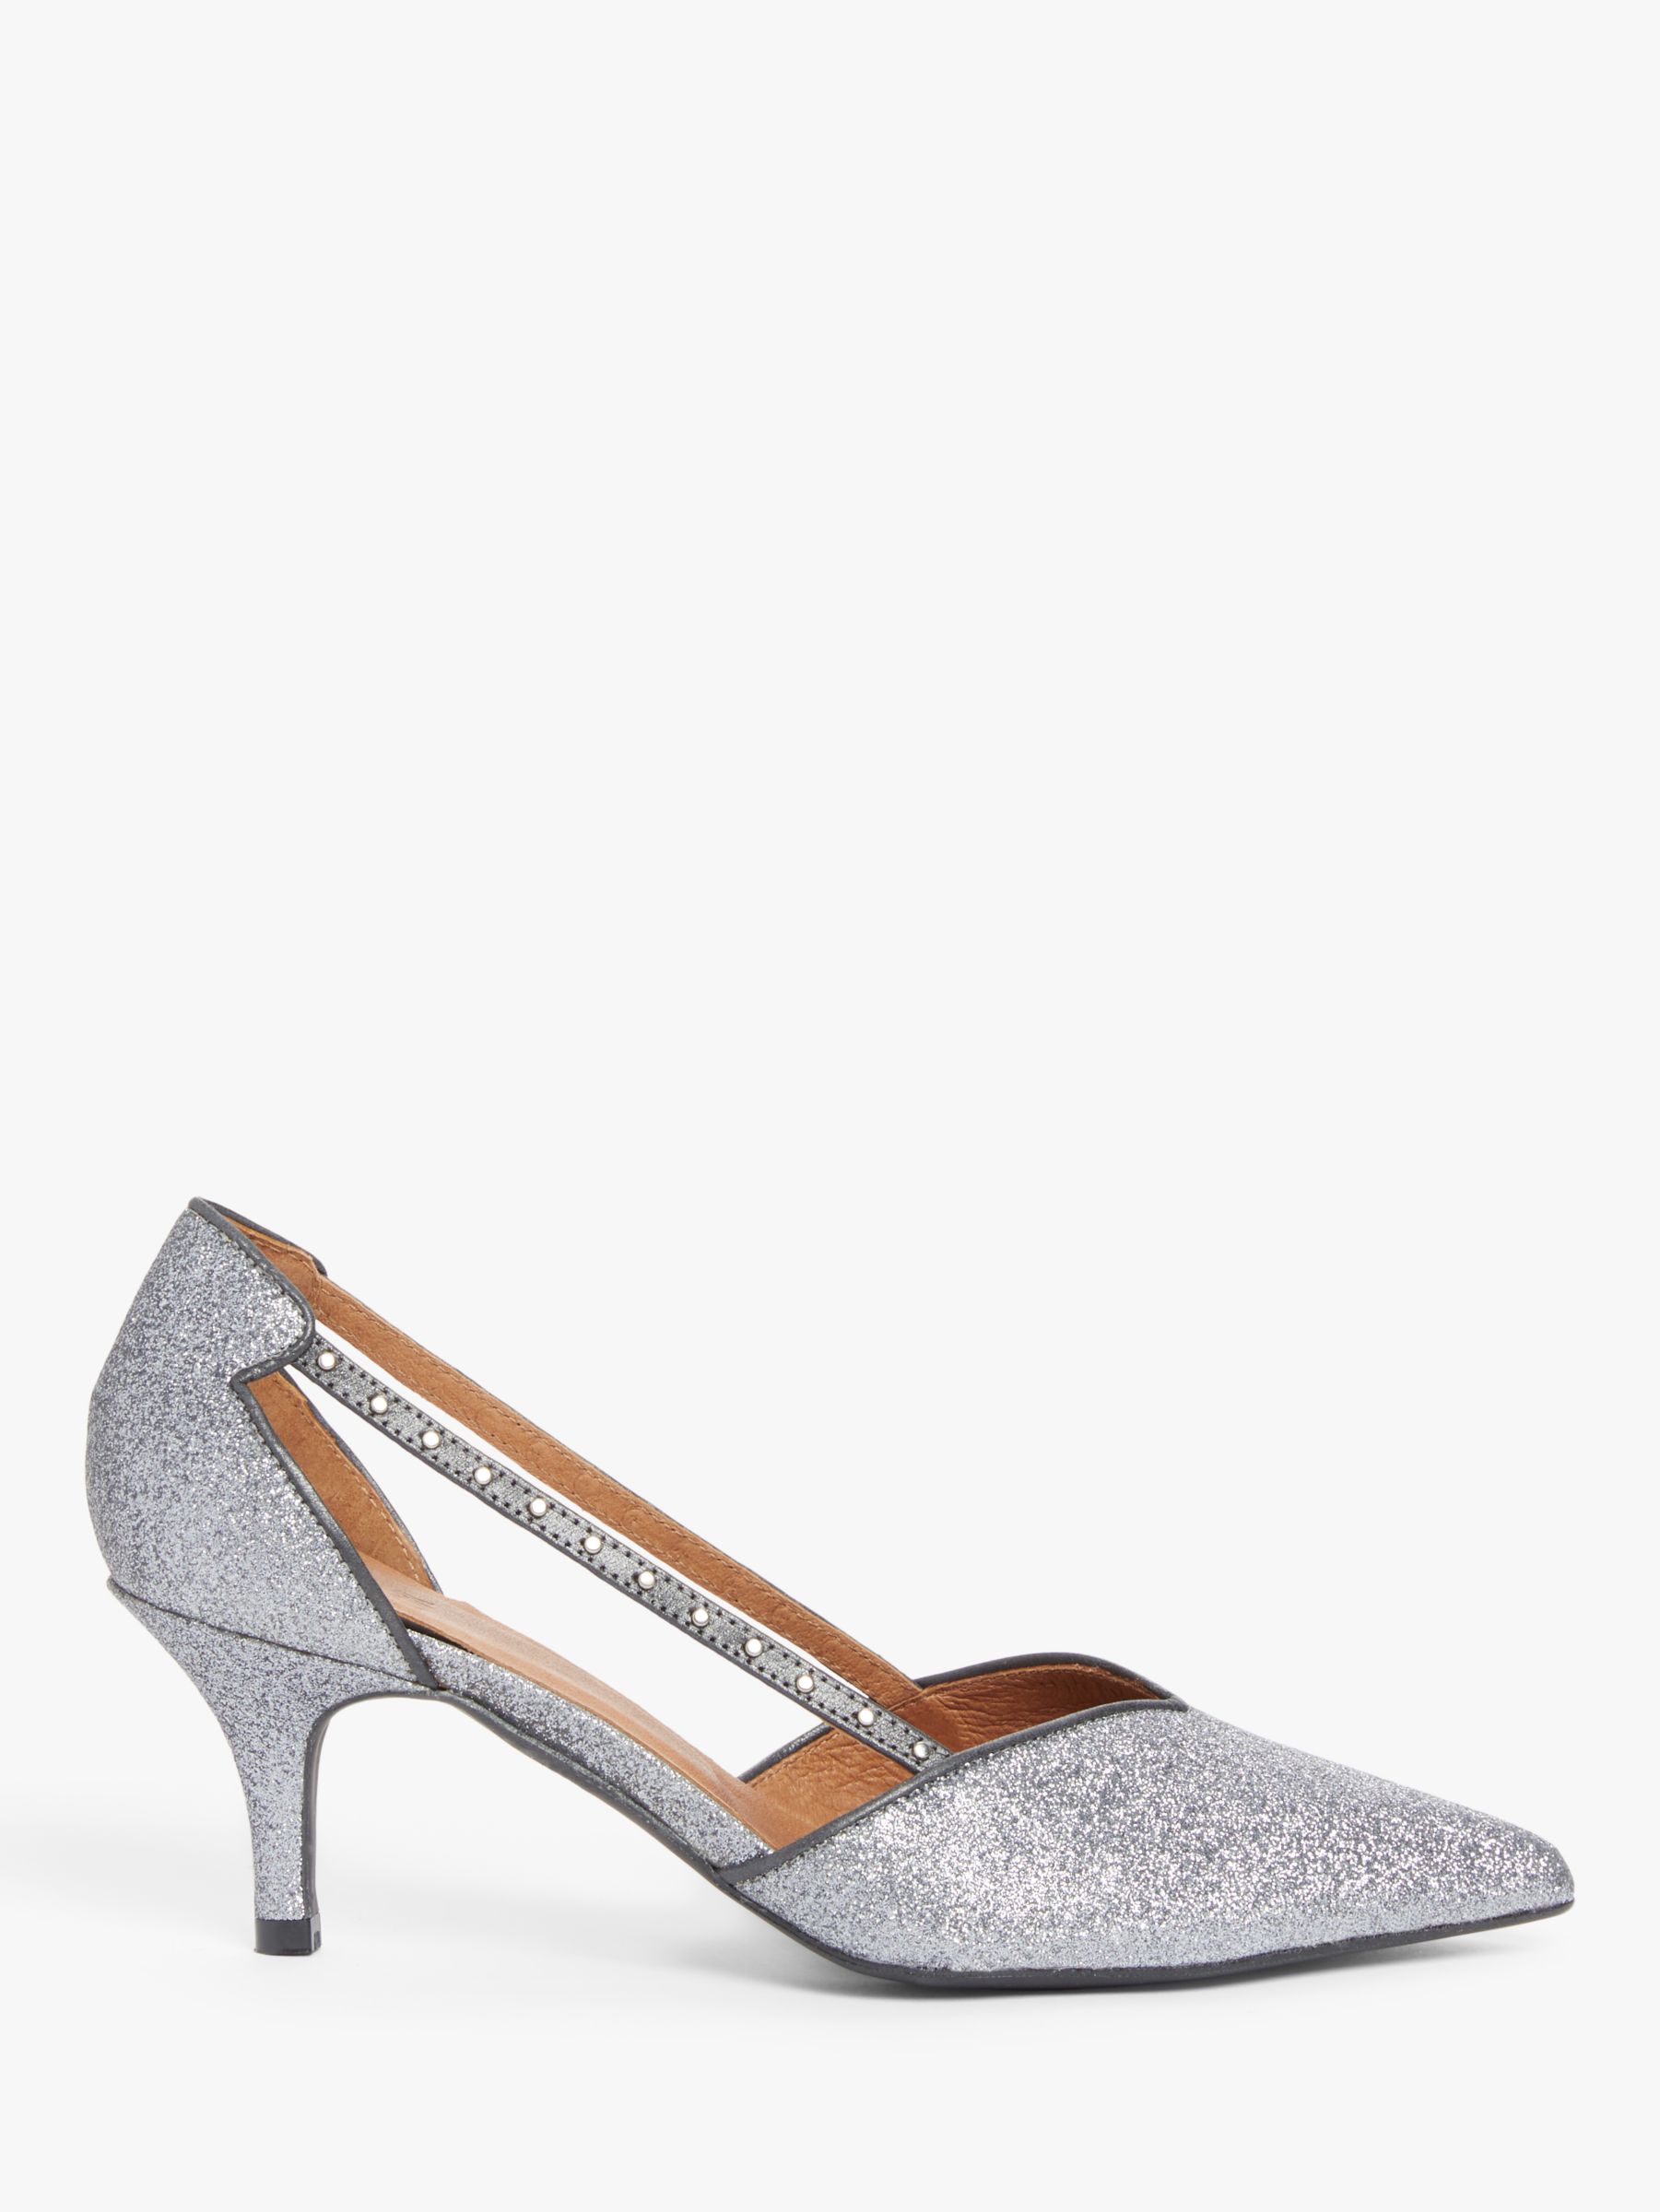 silver kitten heels